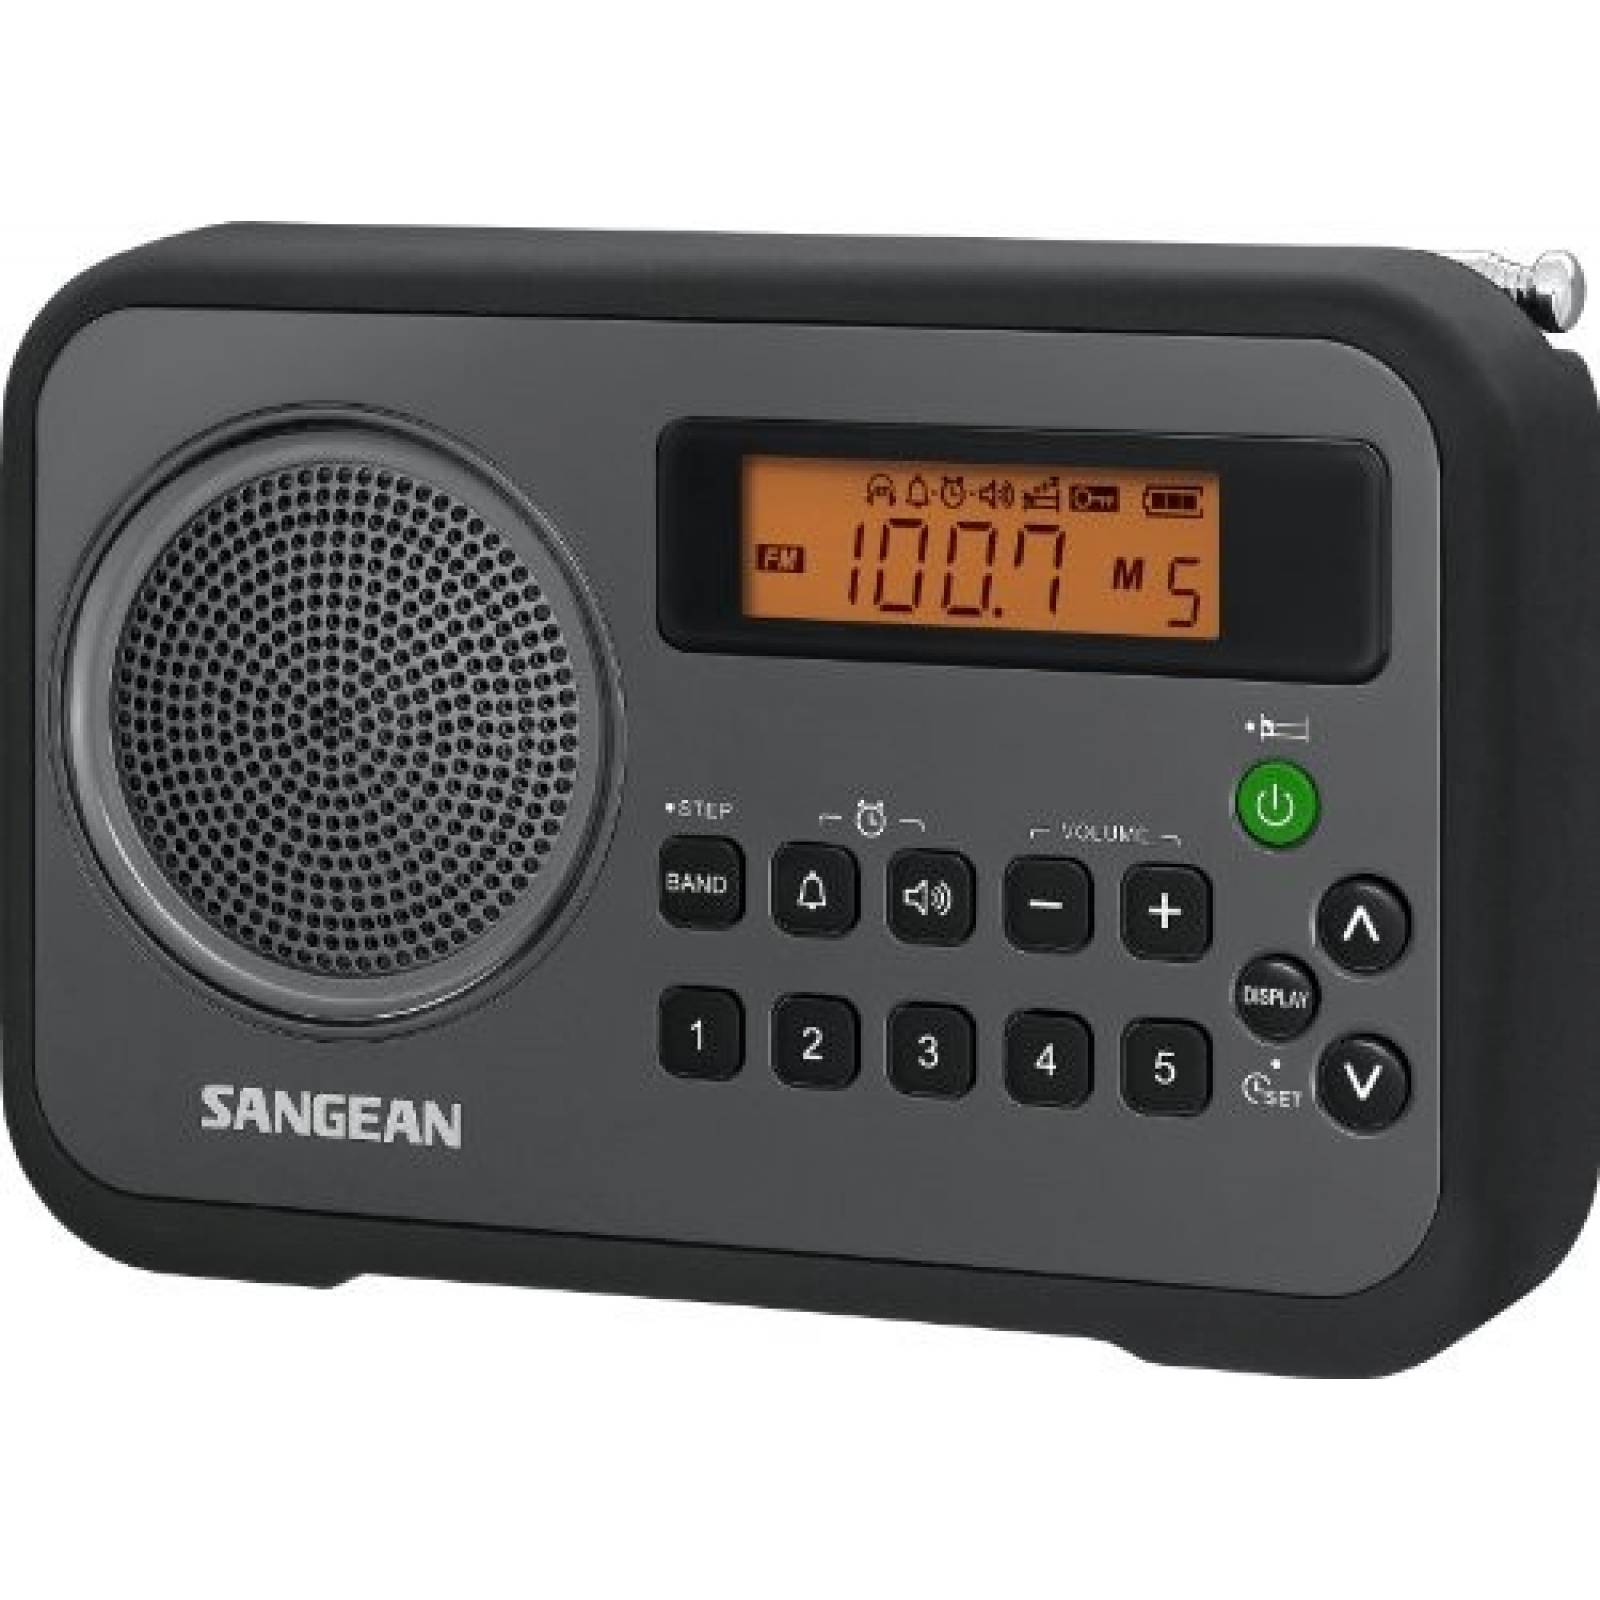 Radio digital portátil Sangean PR-D18BK con Reloj